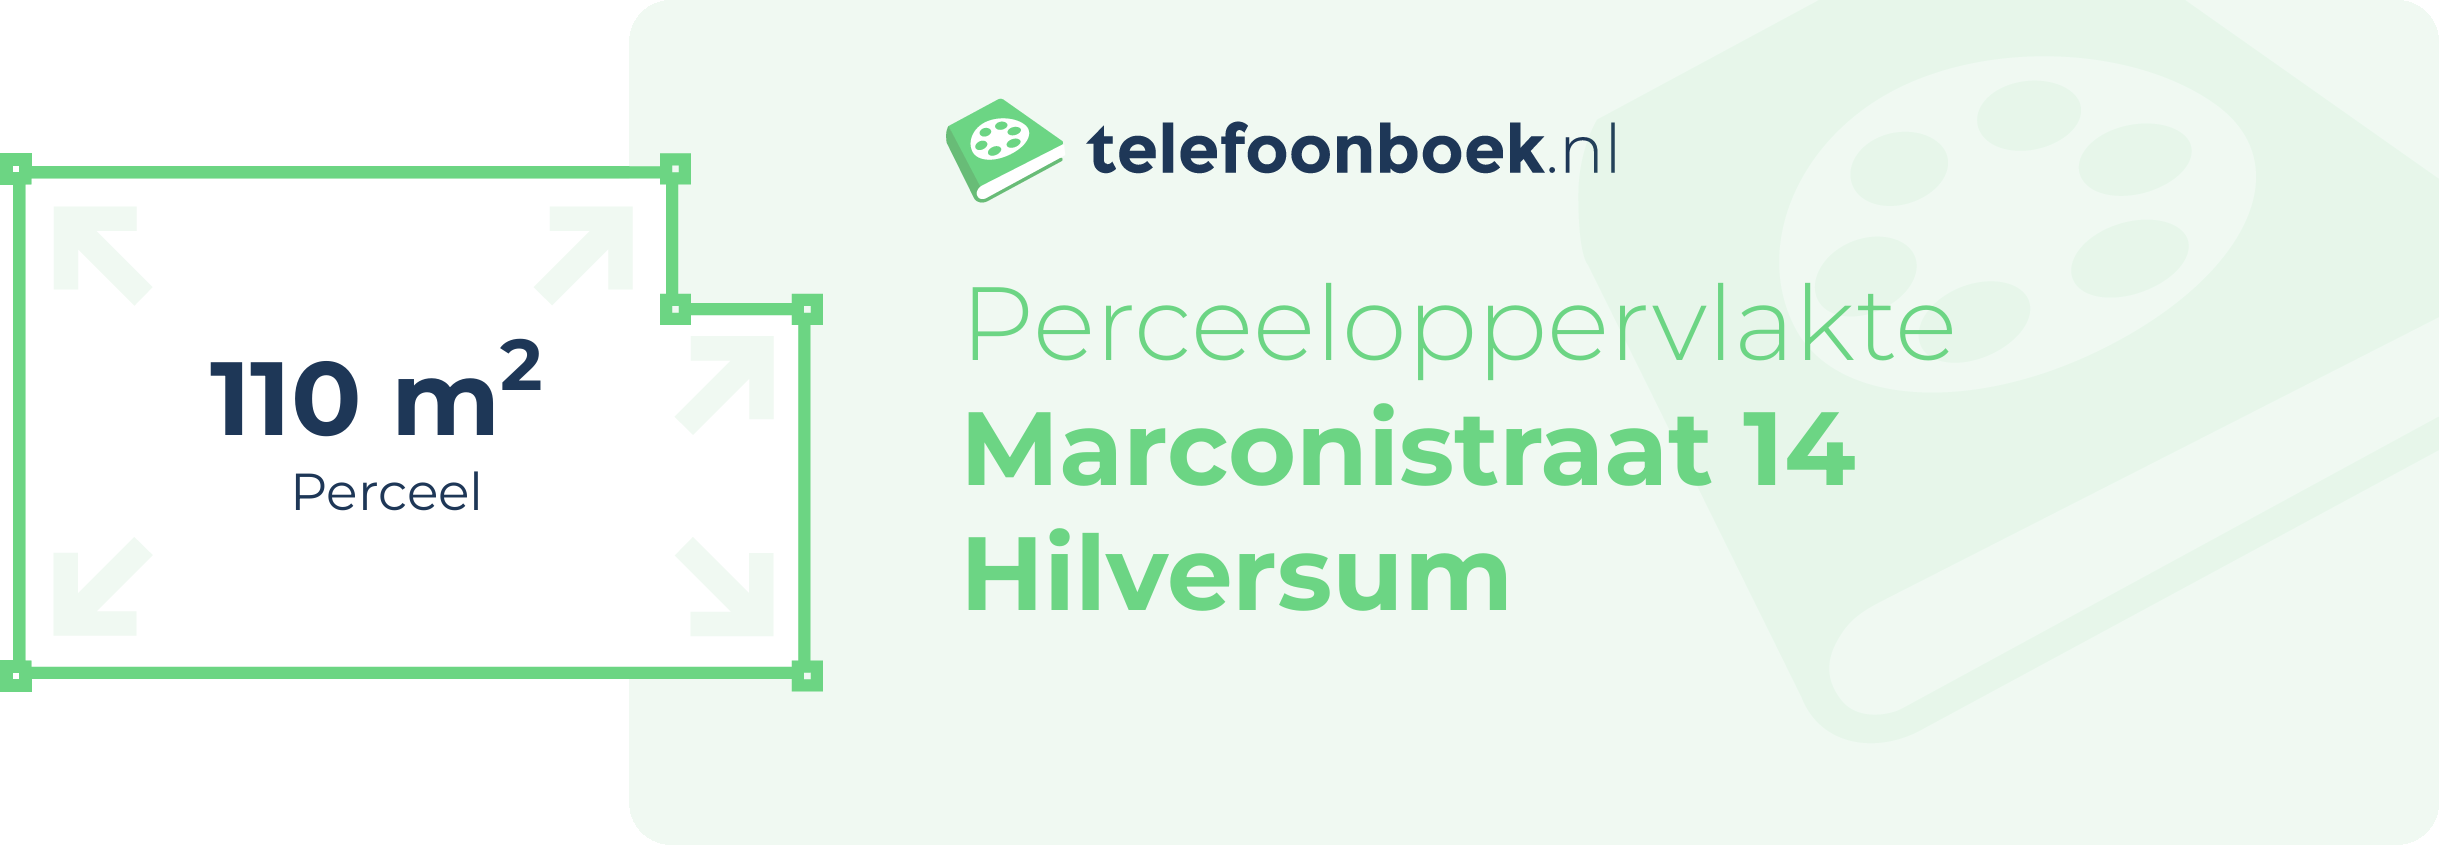 Perceeloppervlakte Marconistraat 14 Hilversum